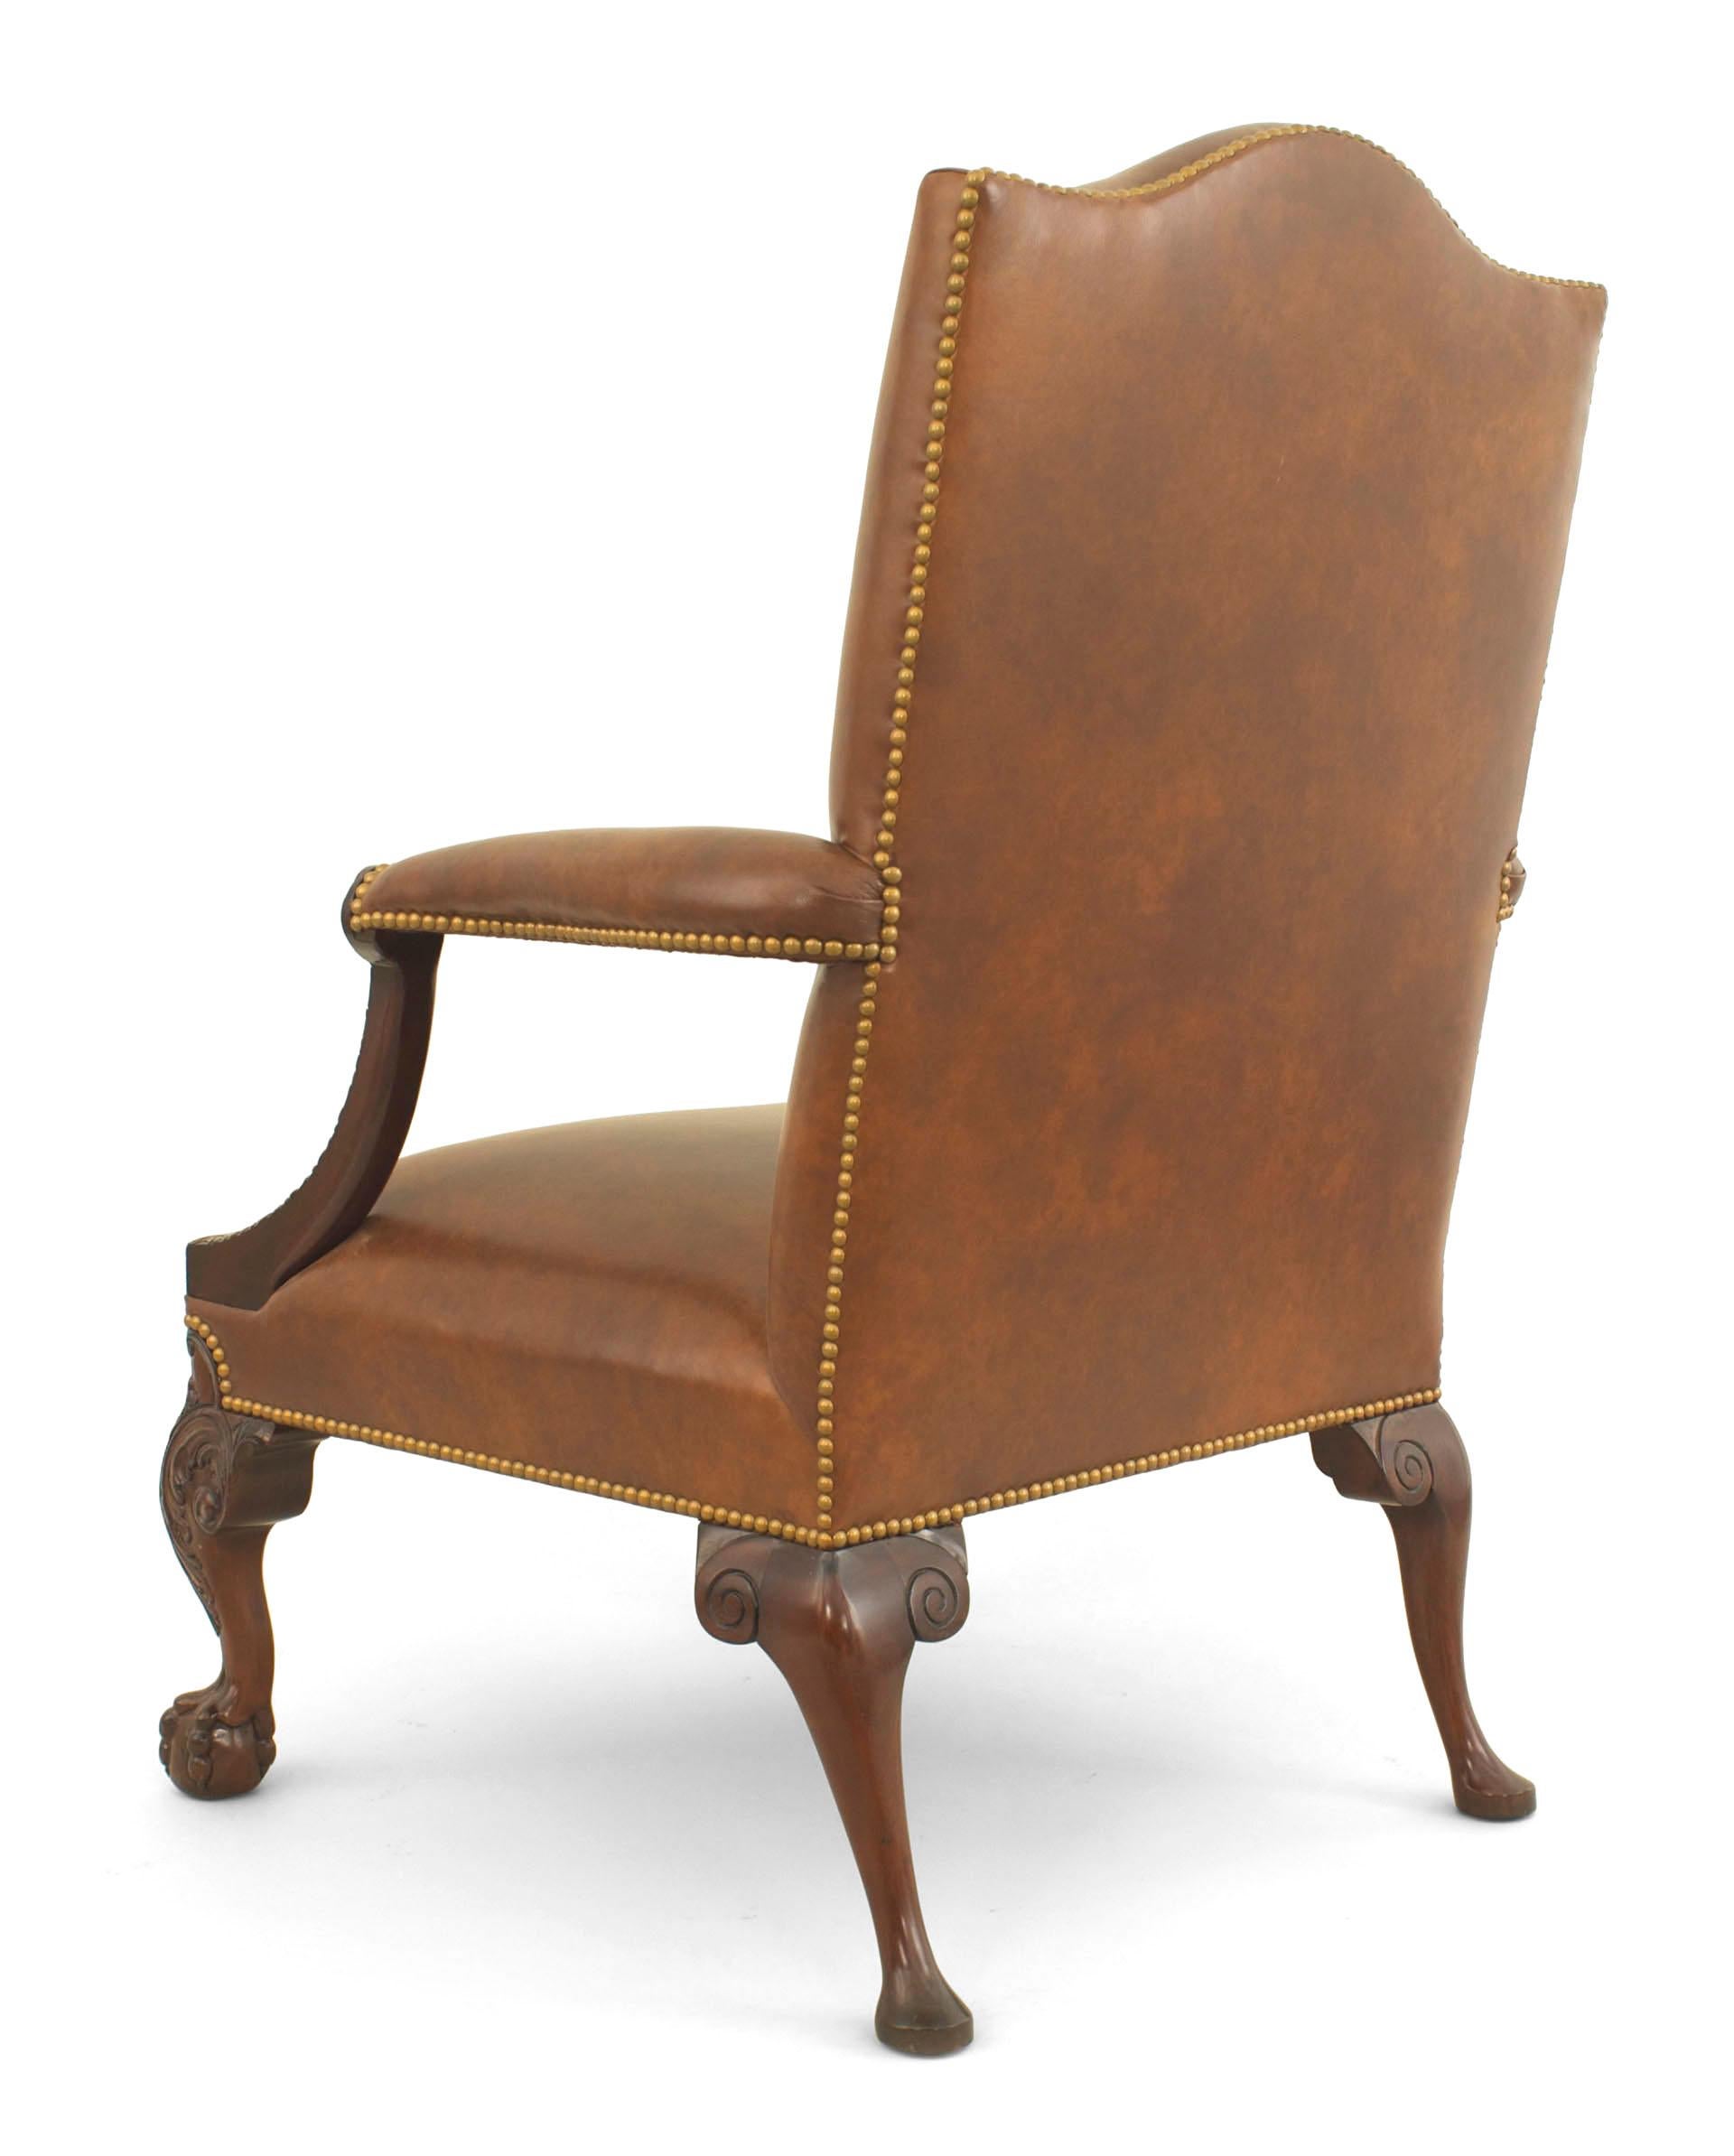 Englischer geschnitzter offener Sessel aus Mahagoni im Chippendale-Stil (modern) mit geformter Rückenlehne und Polsterung aus braunem Leder mit Sitzkissen.
 